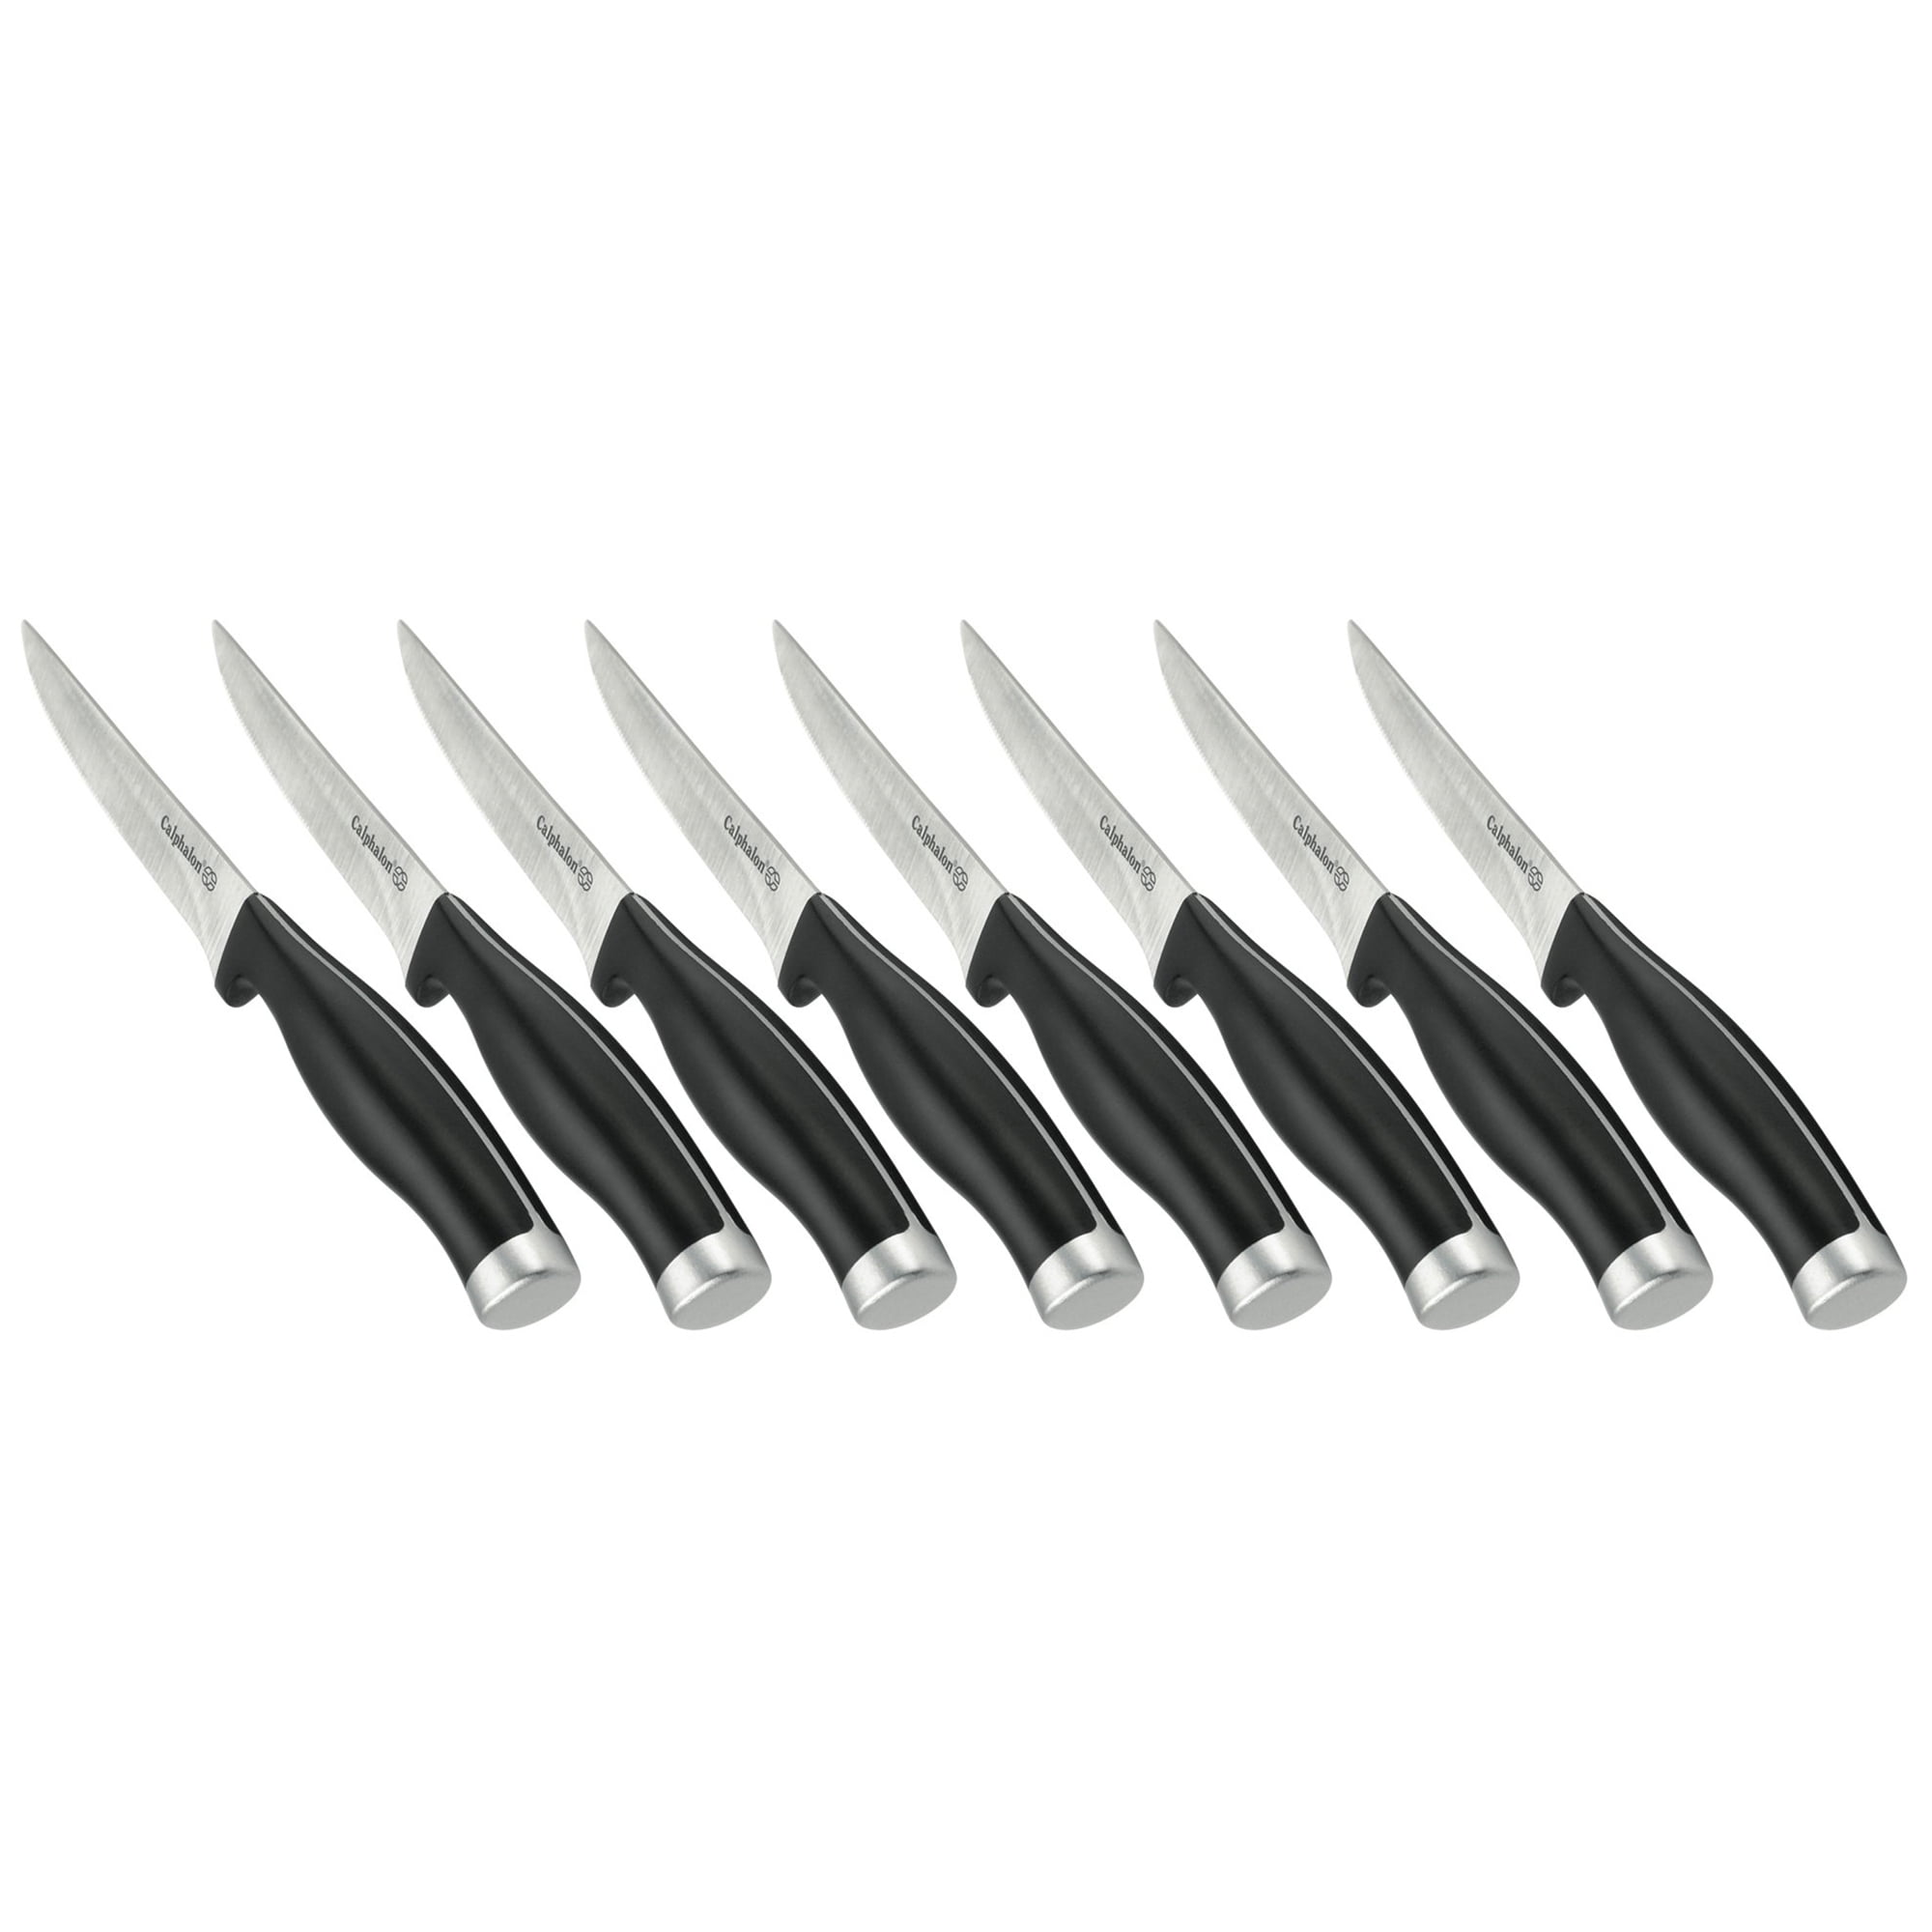 Calphalon Contemporary 17-piece Cutlery Block Set Reviews 2024